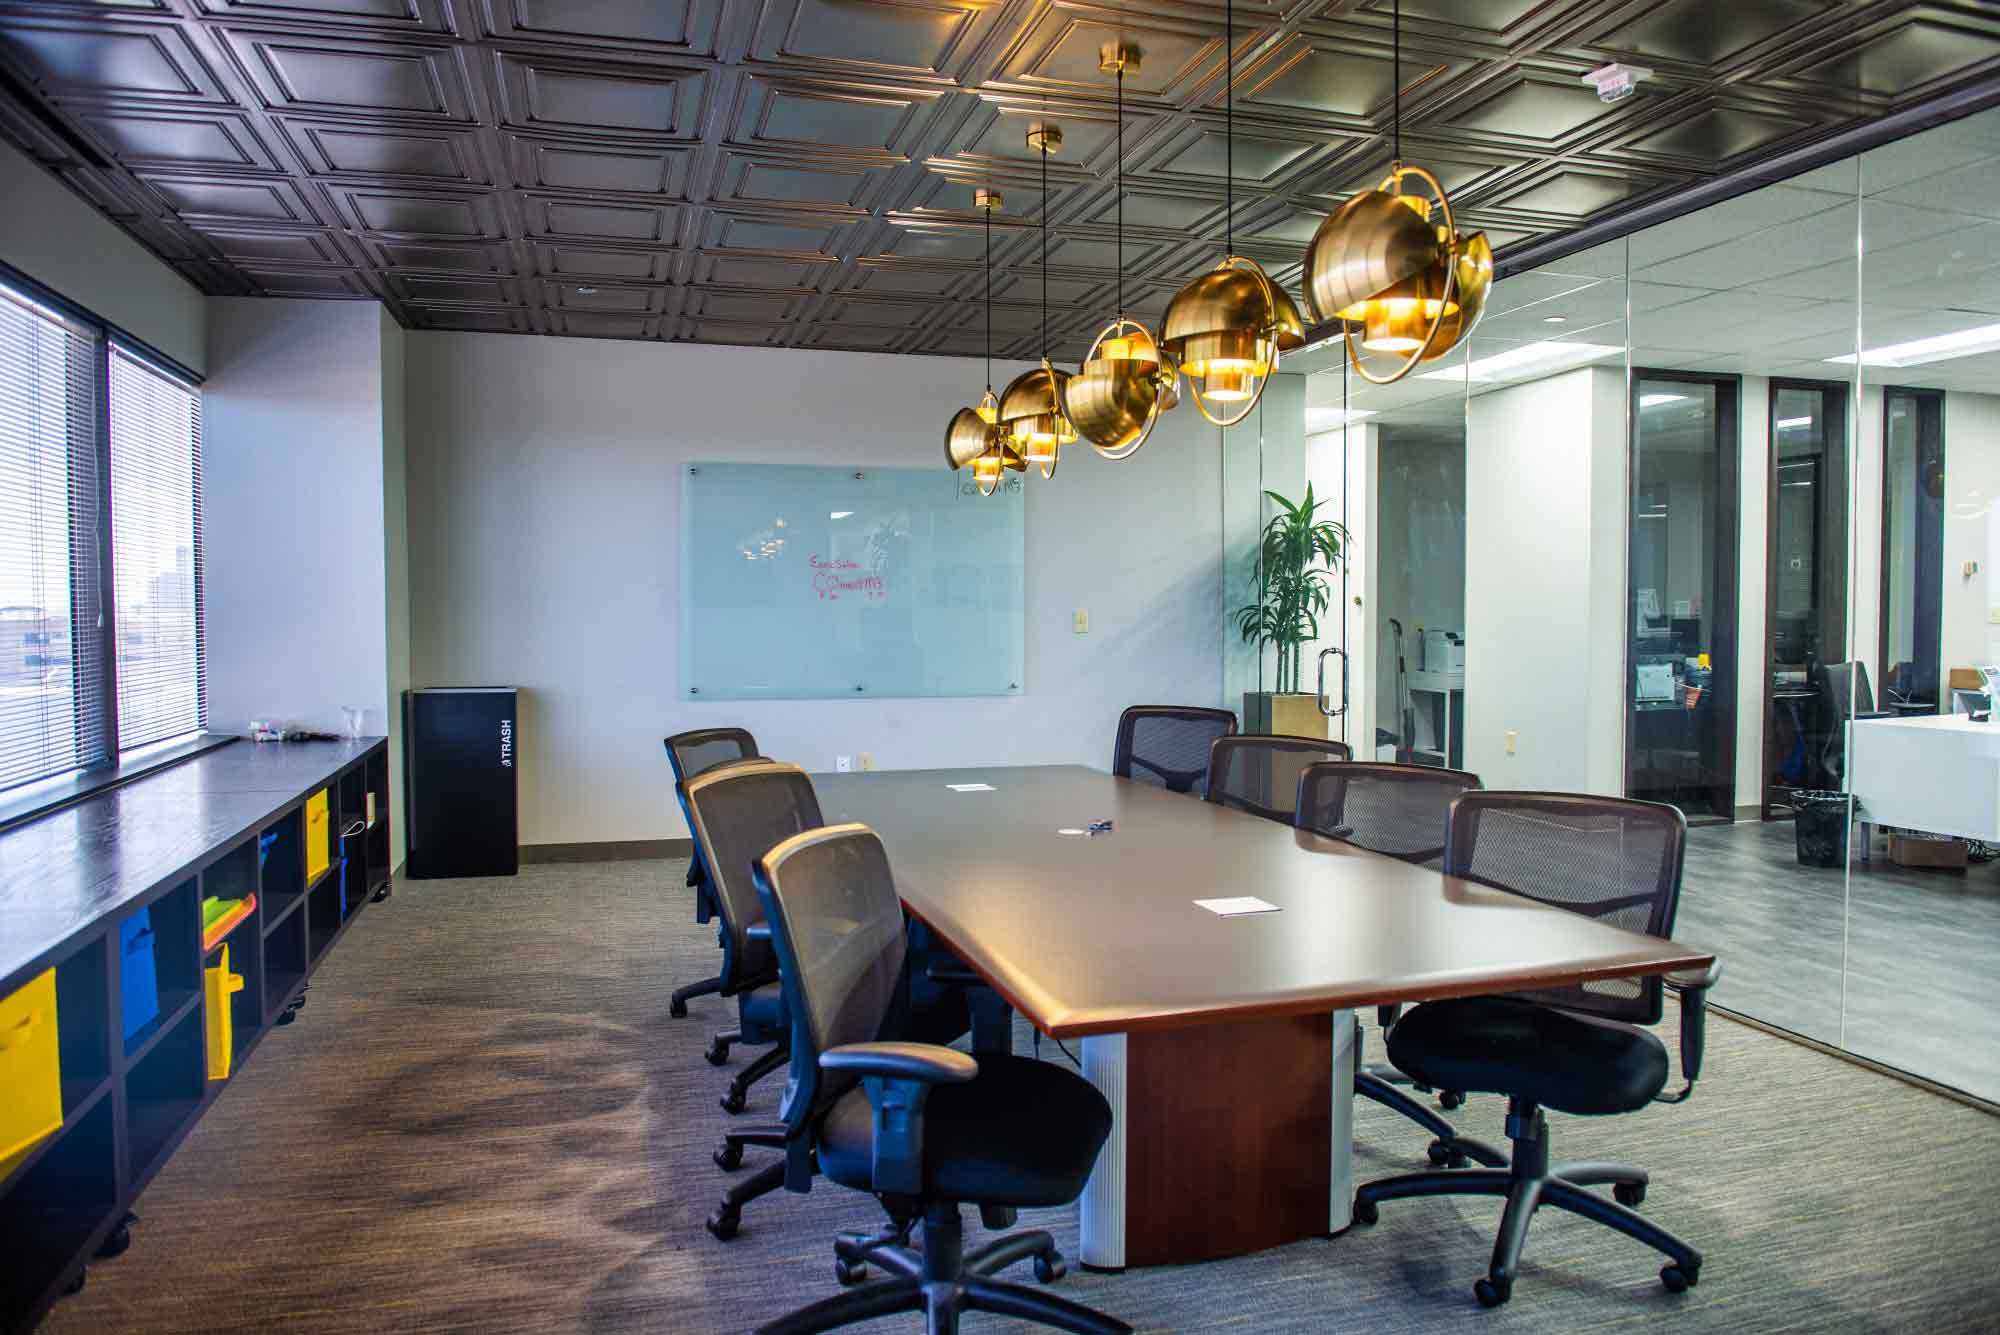 formal meeting room or boardroom